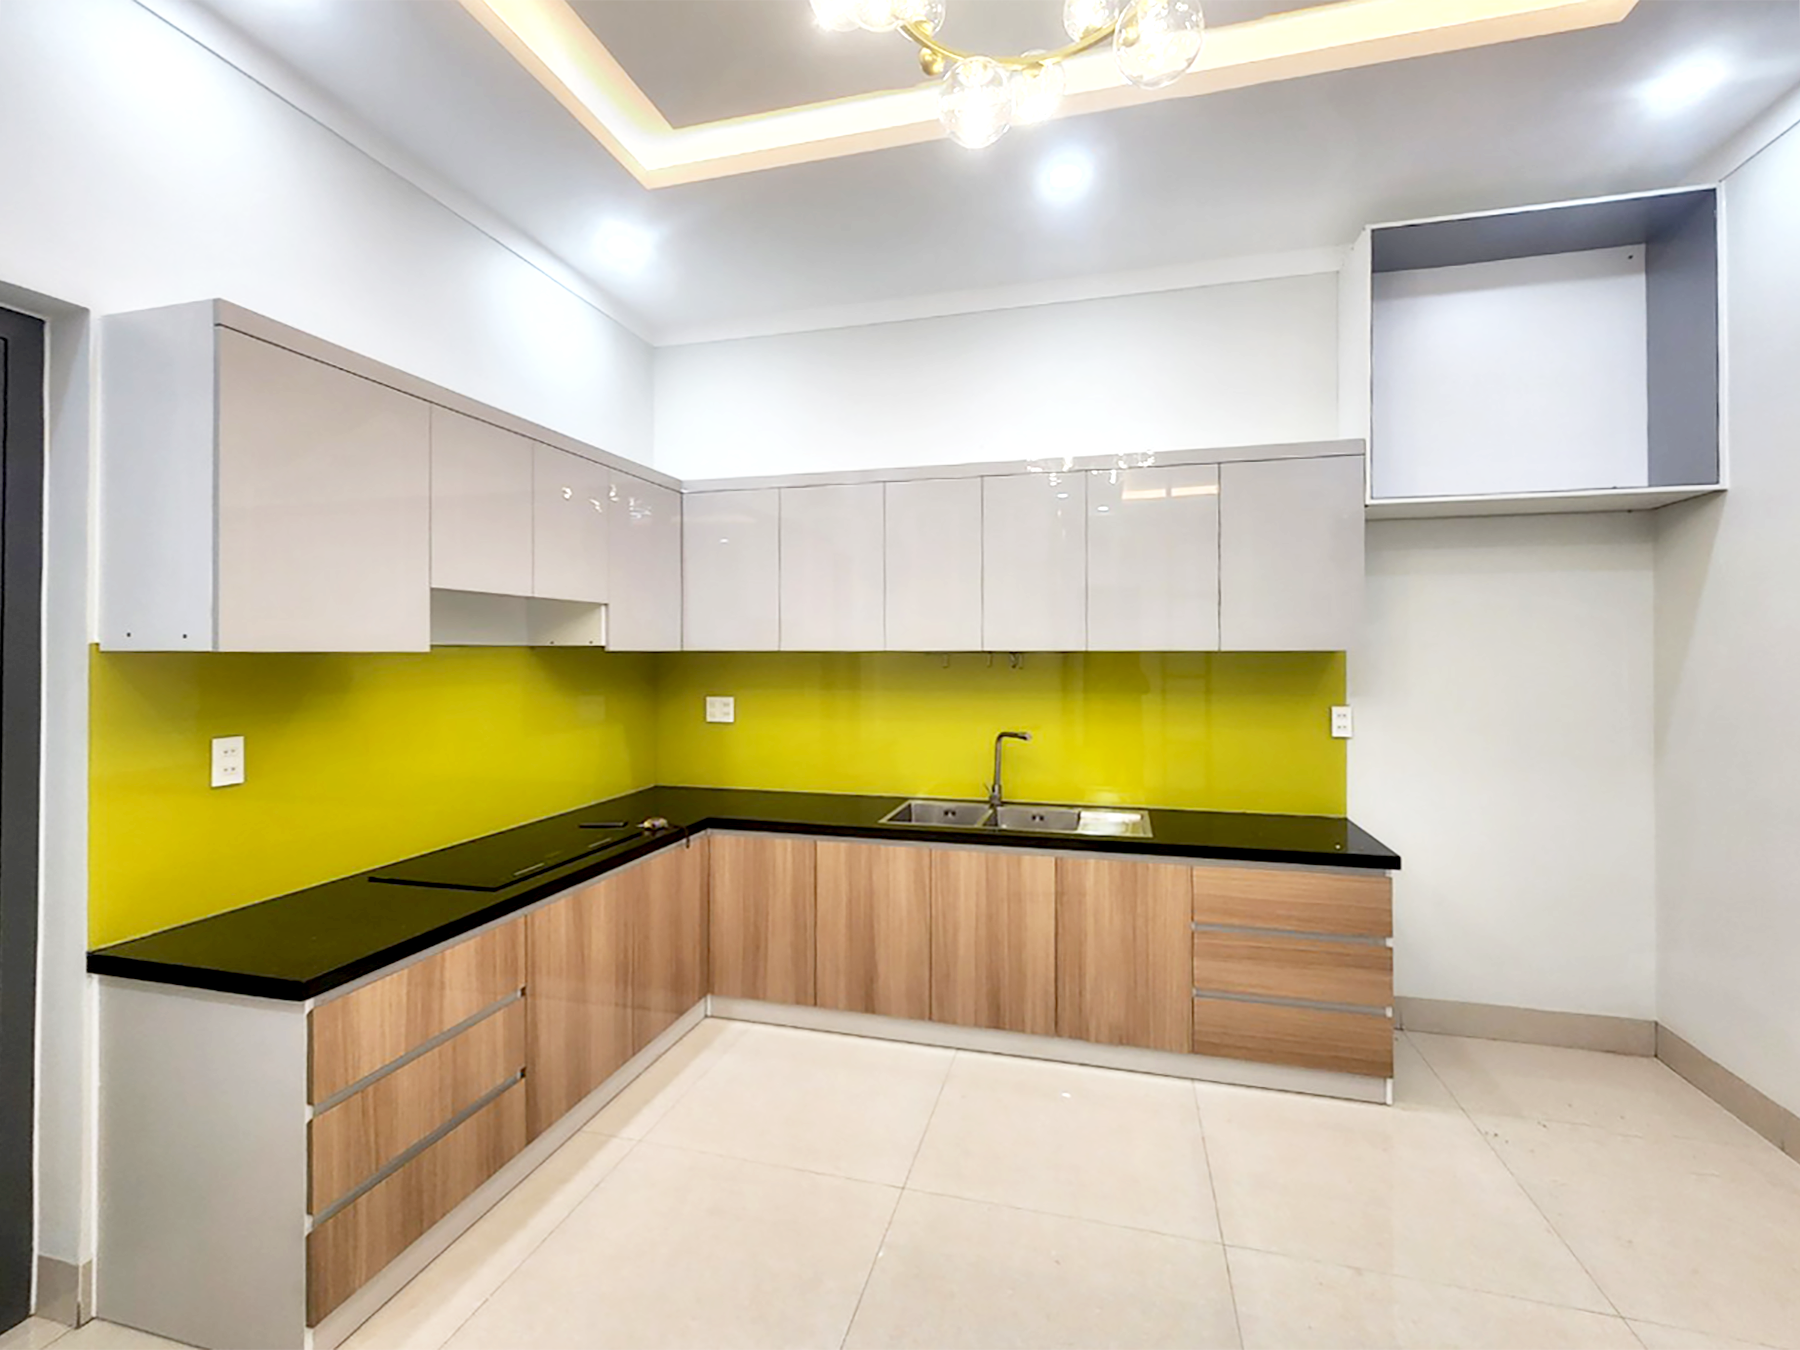 Phòng bếp, phong cách Hiện đại Modern, hoàn thiện nội thất, nhà phố 120m2